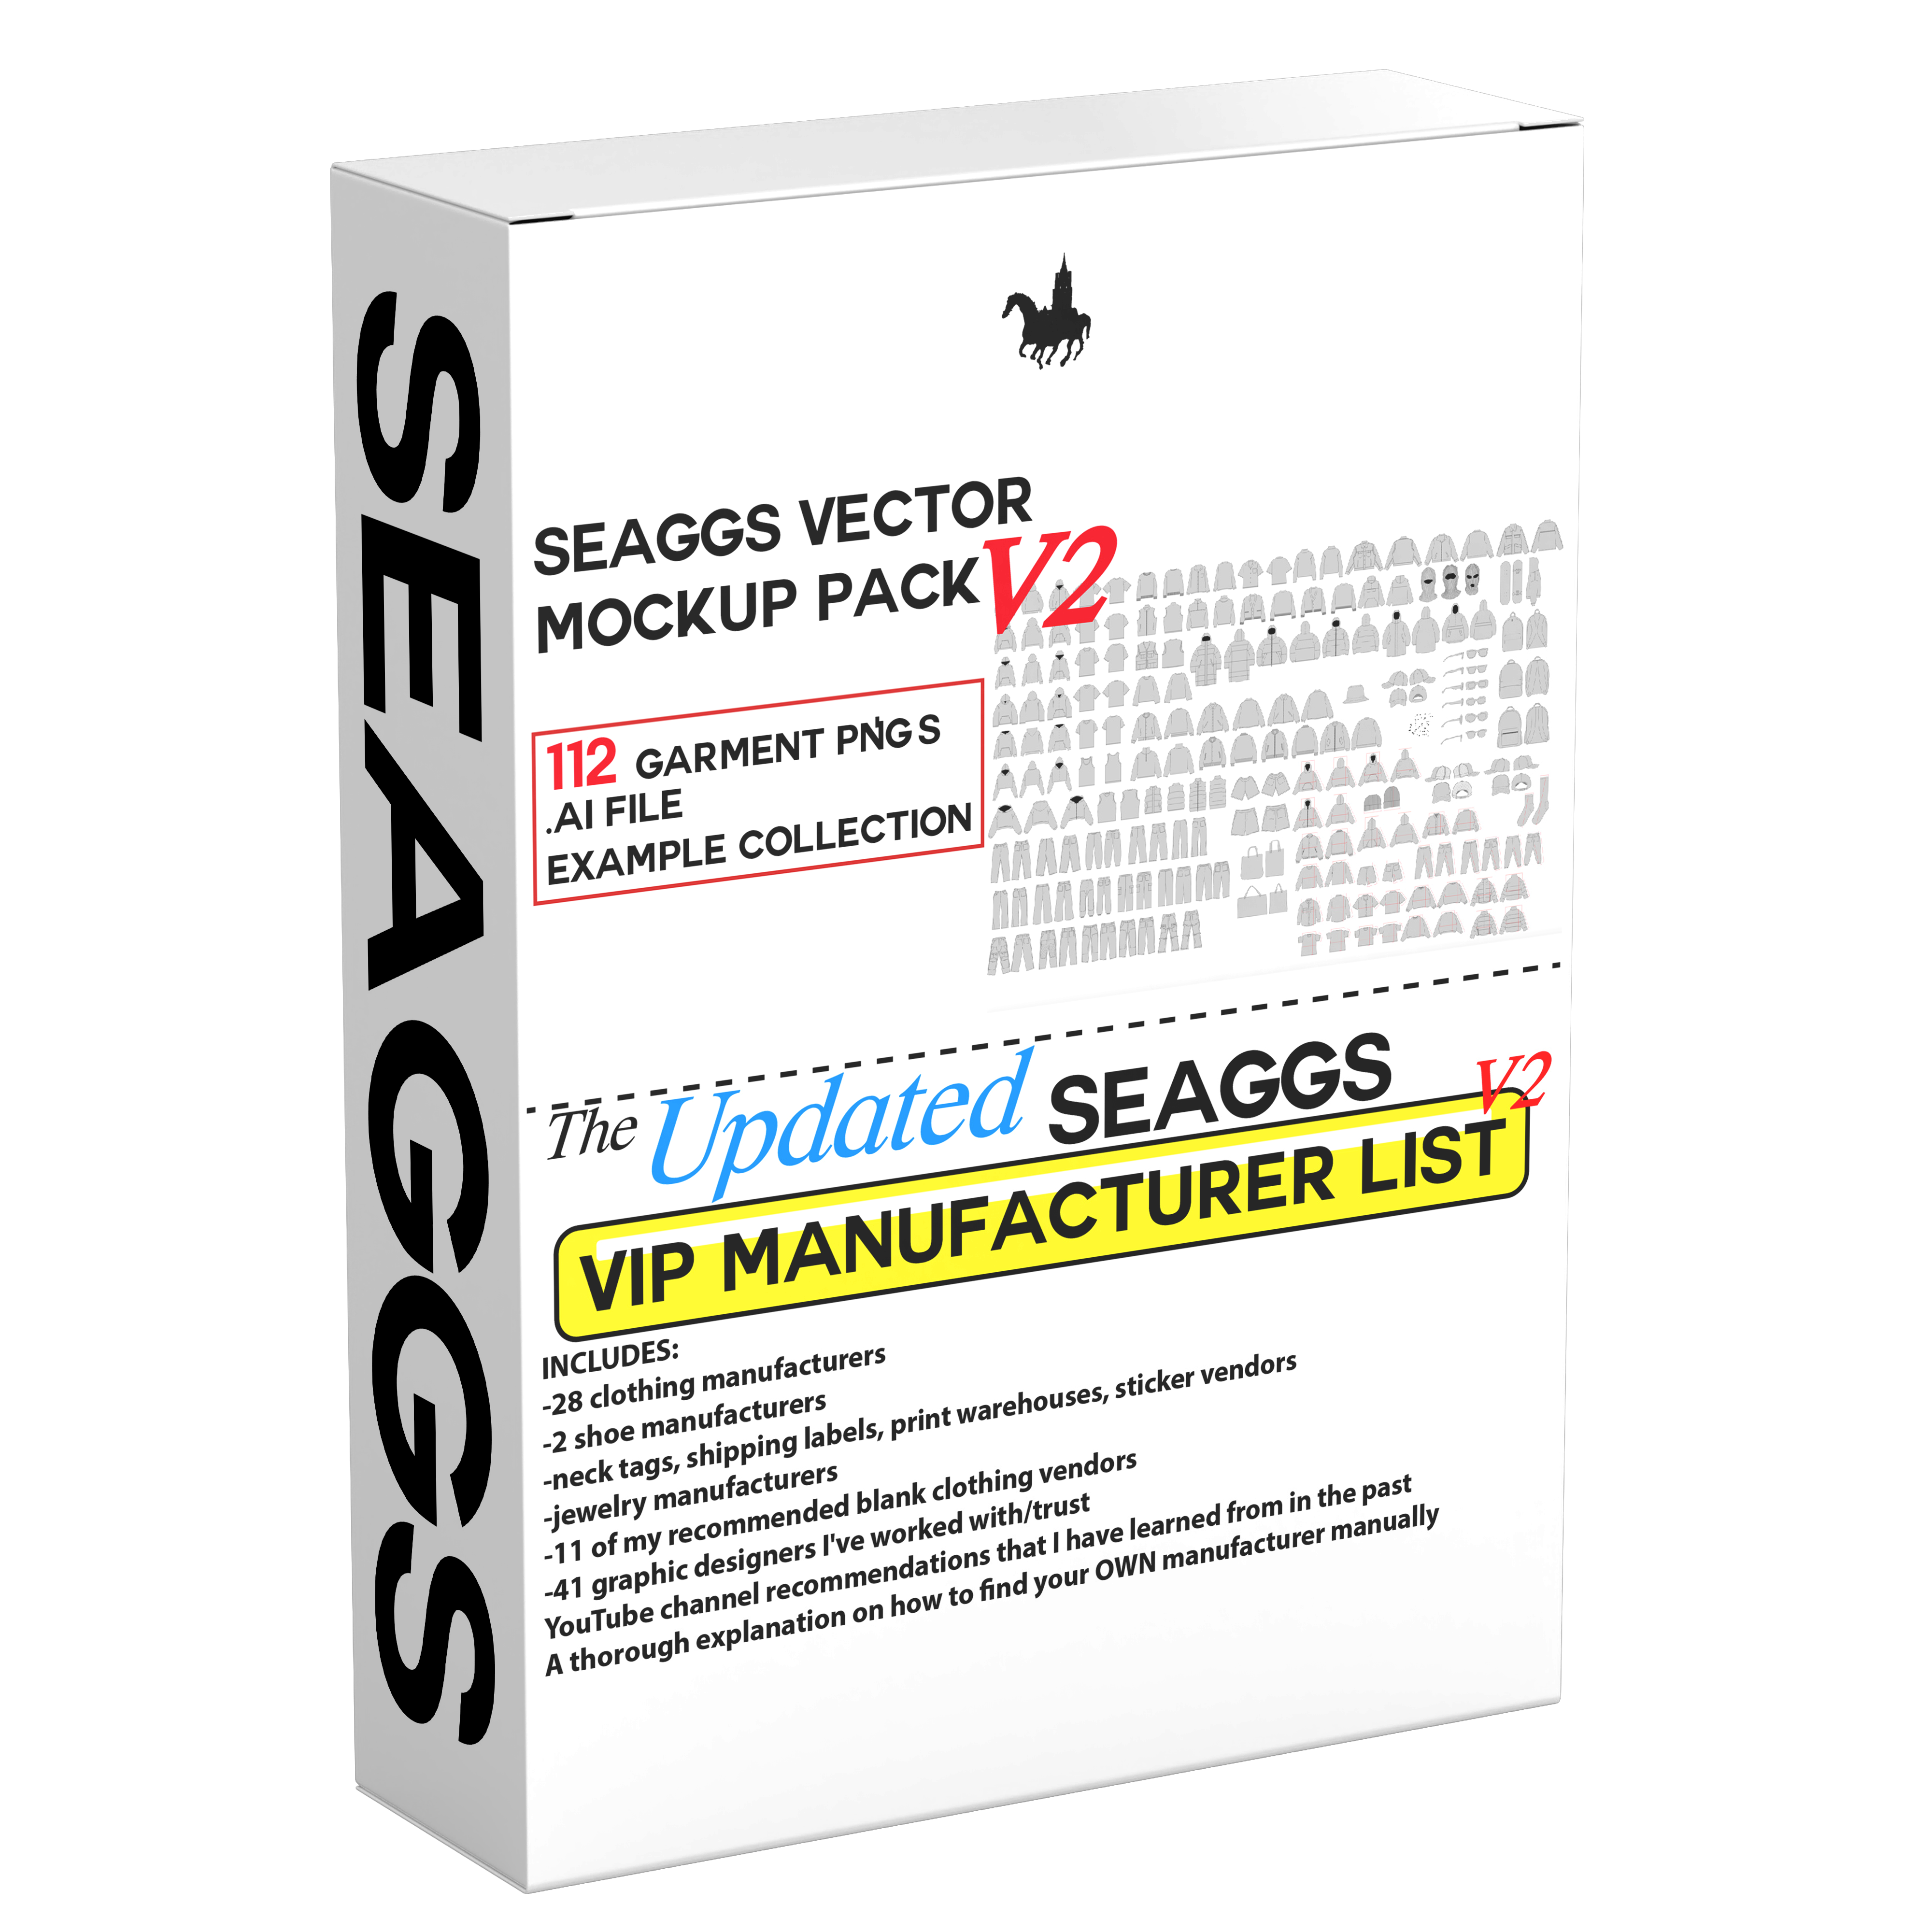 Seaggs Premium Vector Mockup Pack V2 + VIP Manufacturer List V2 Bundle